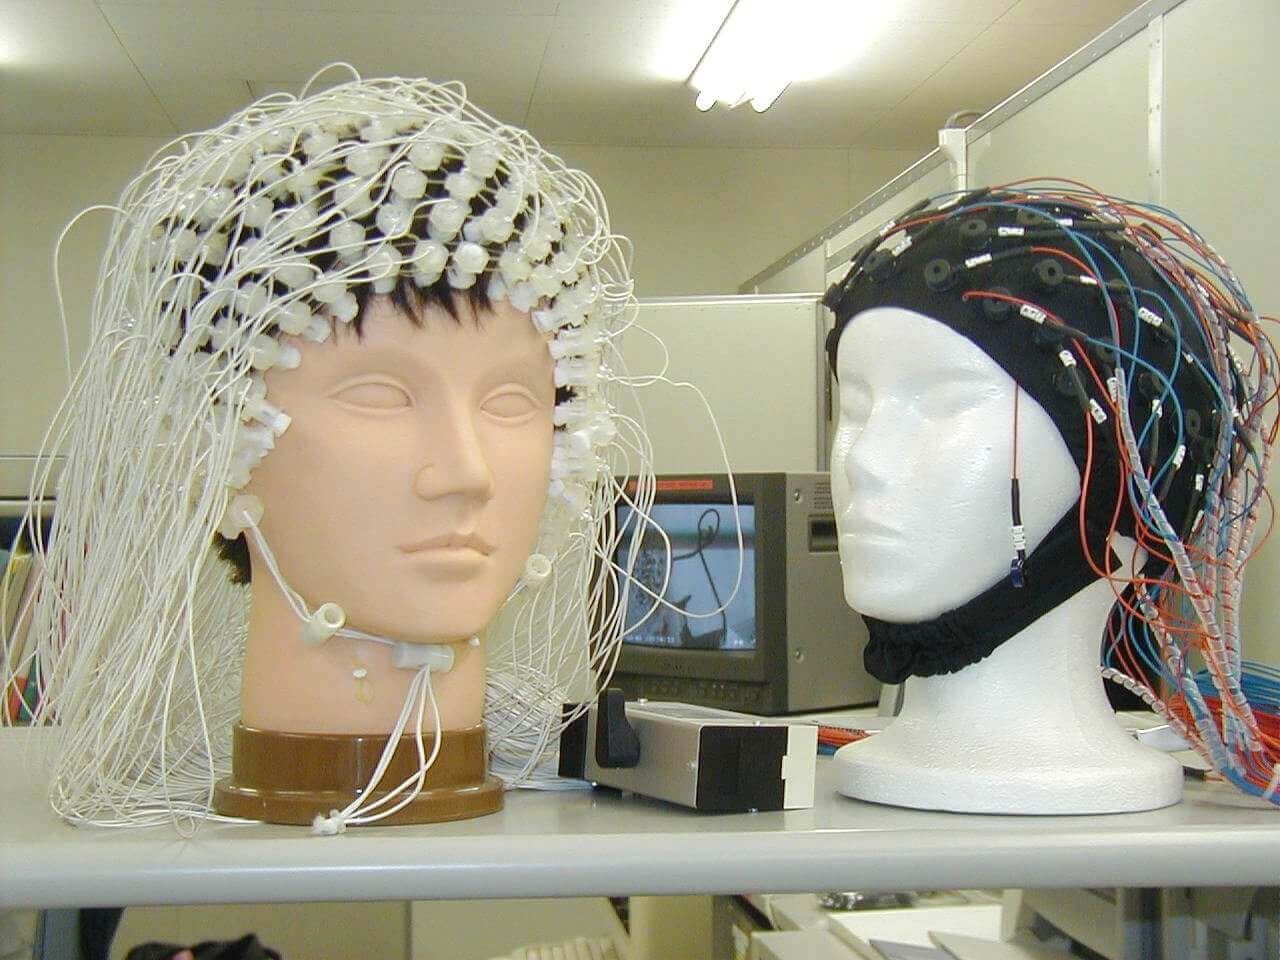 Компьютерная ээг. ЭЭГ головного мозга электроды. Электродная шапочка для ЭЭГ. Шлем для ЭЭГ Нейрософт. Электроэнцефалография головного мозга (ЭЭГ).